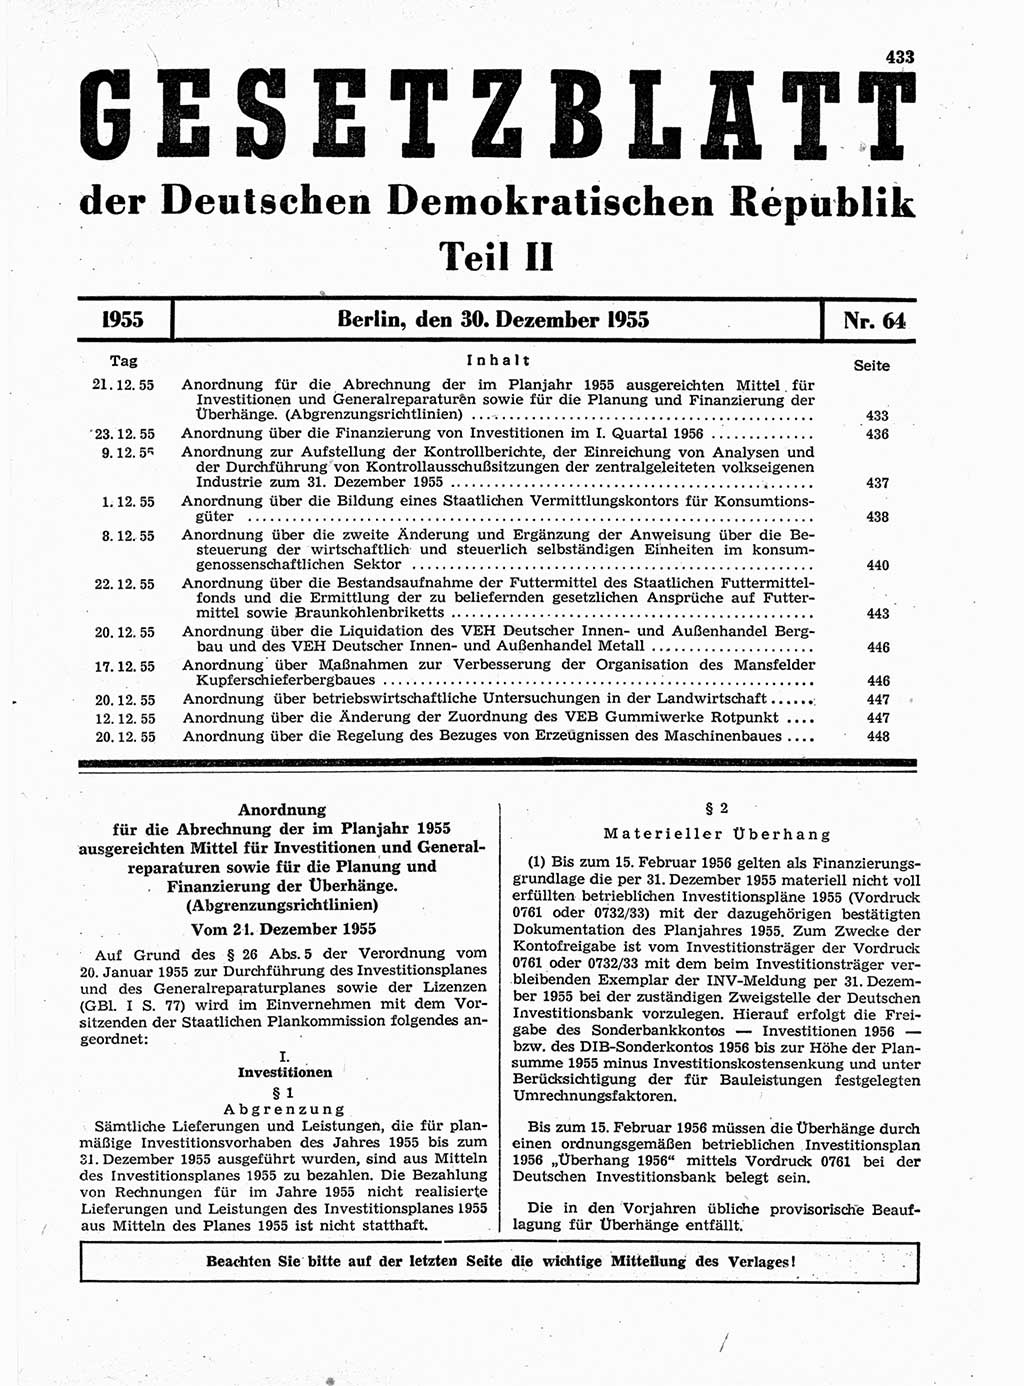 Gesetzblatt (GBl.) der Deutschen Demokratischen Republik (DDR) Teil ⅠⅠ 1955, Seite 433 (GBl. DDR ⅠⅠ 1955, S. 433)